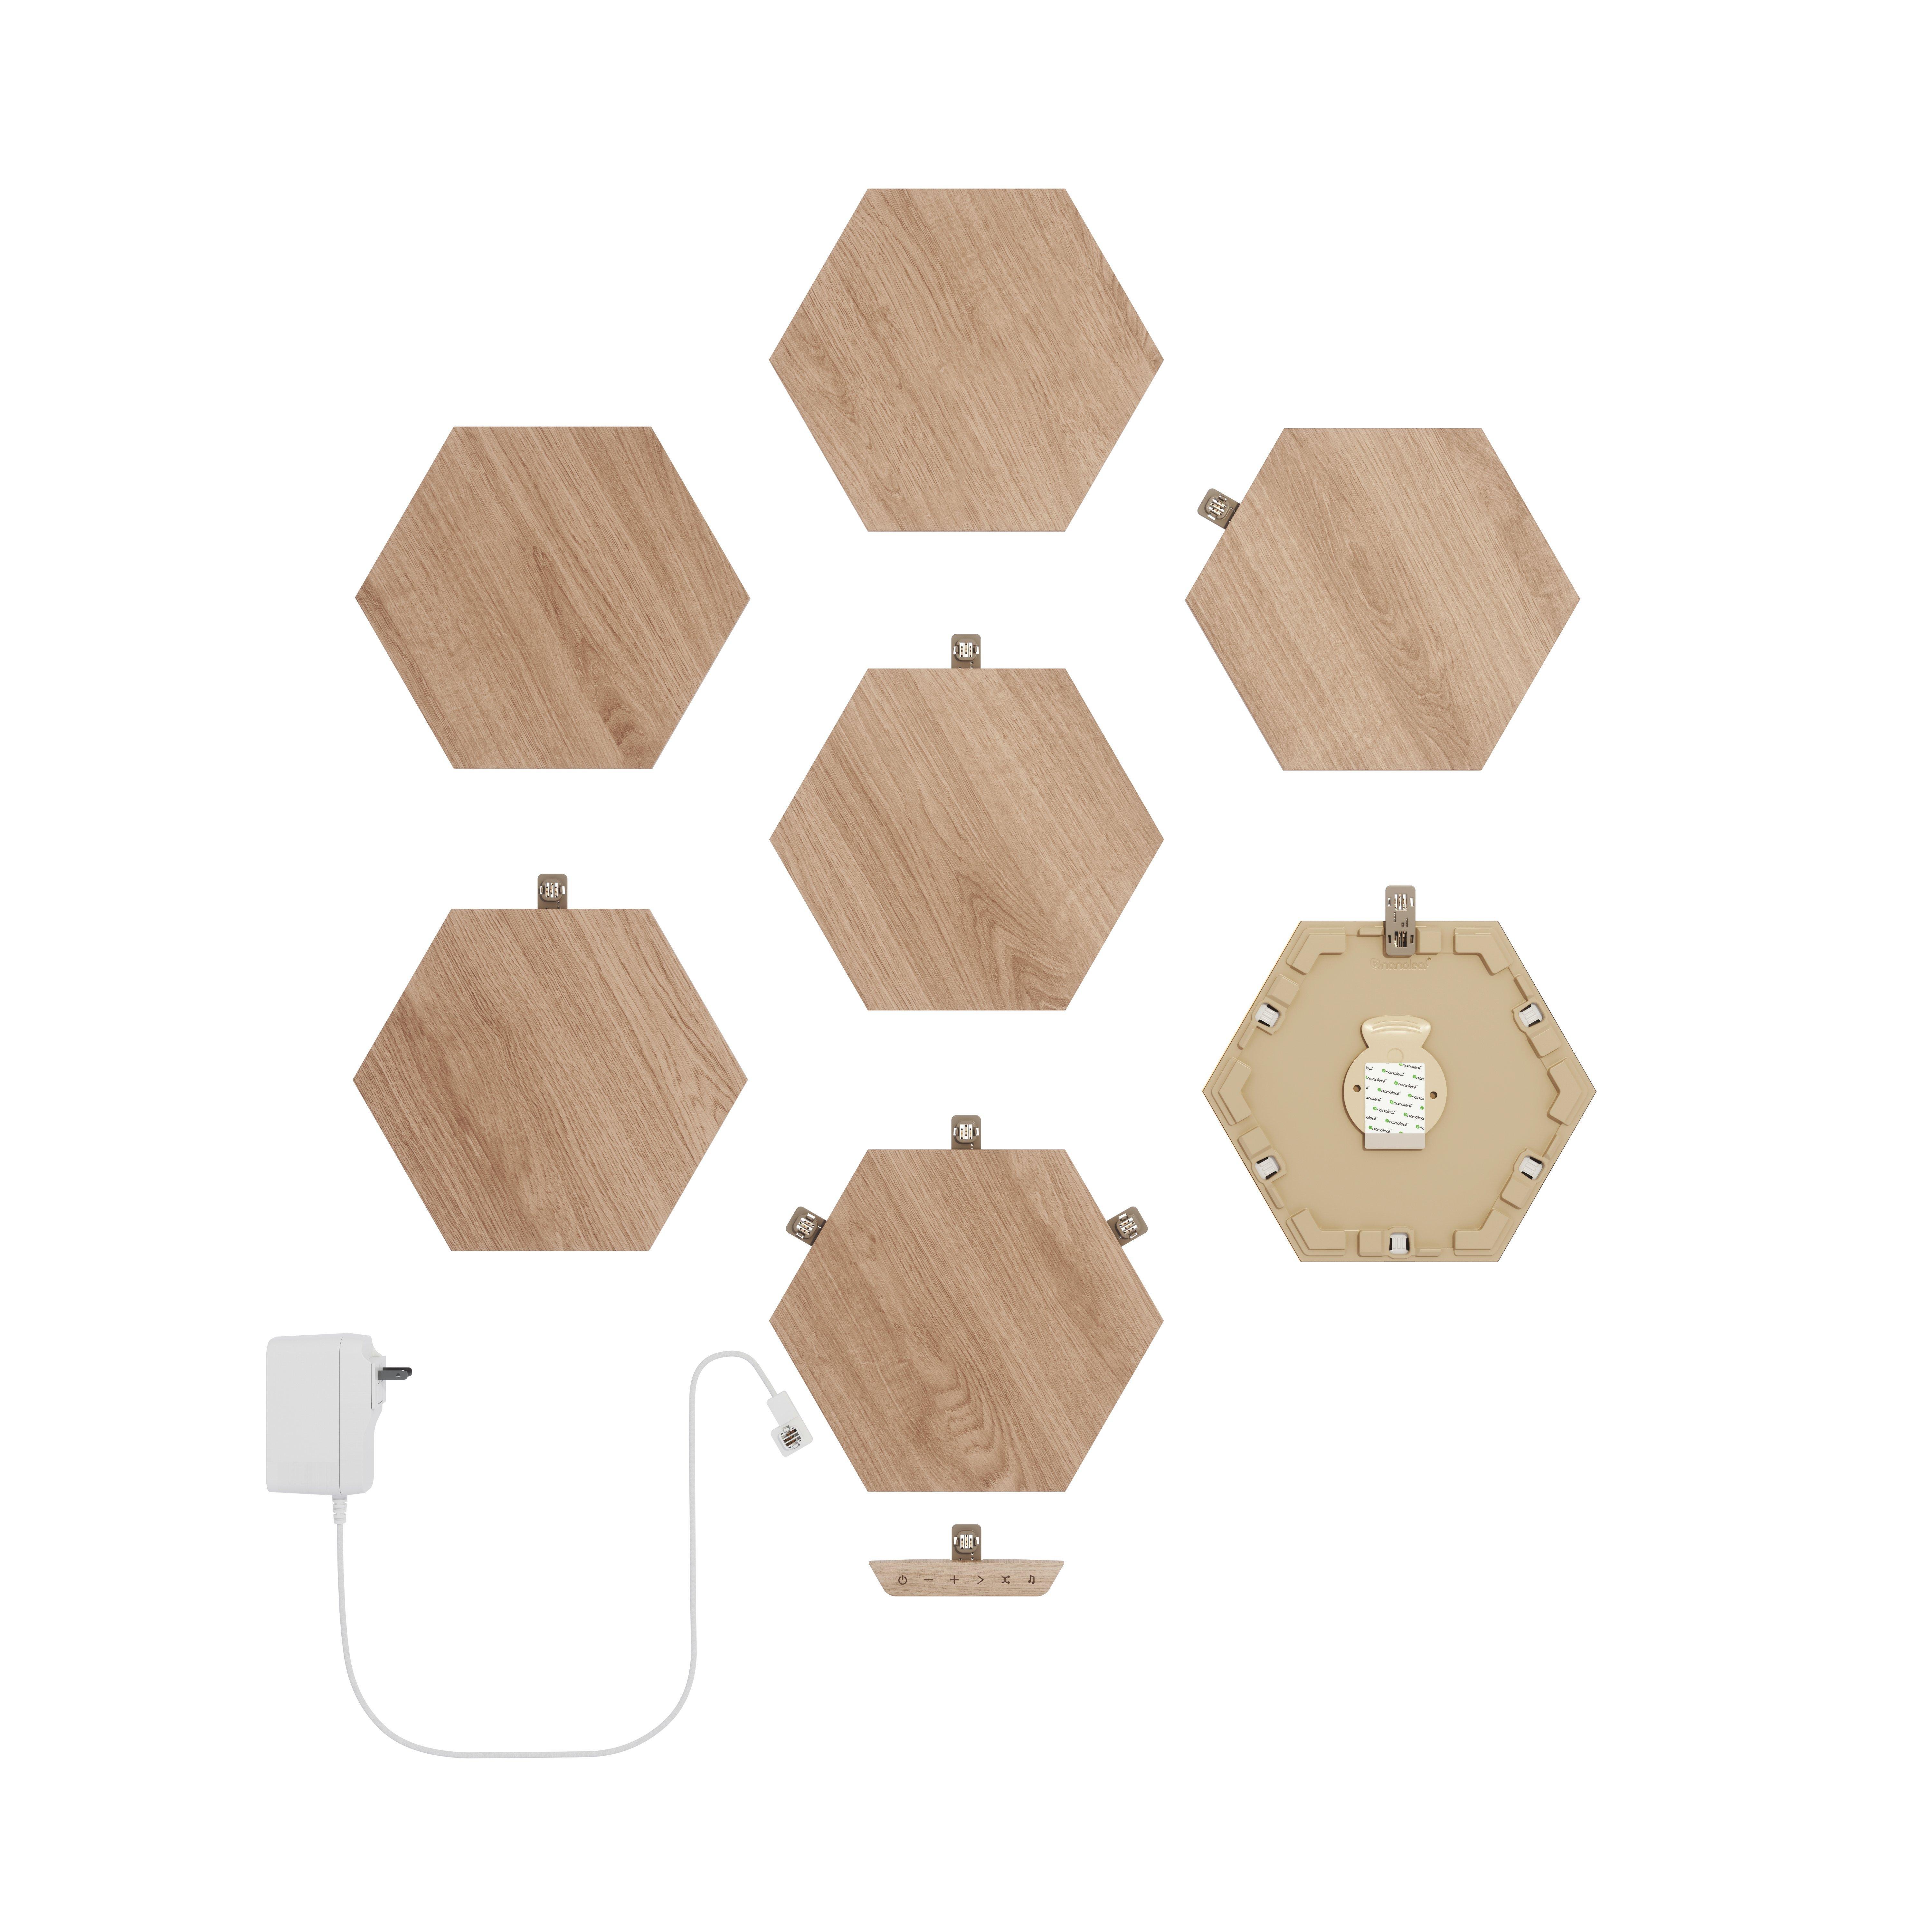 Nanoleaf Elements Wood Look Smarter Kit 7-Panels